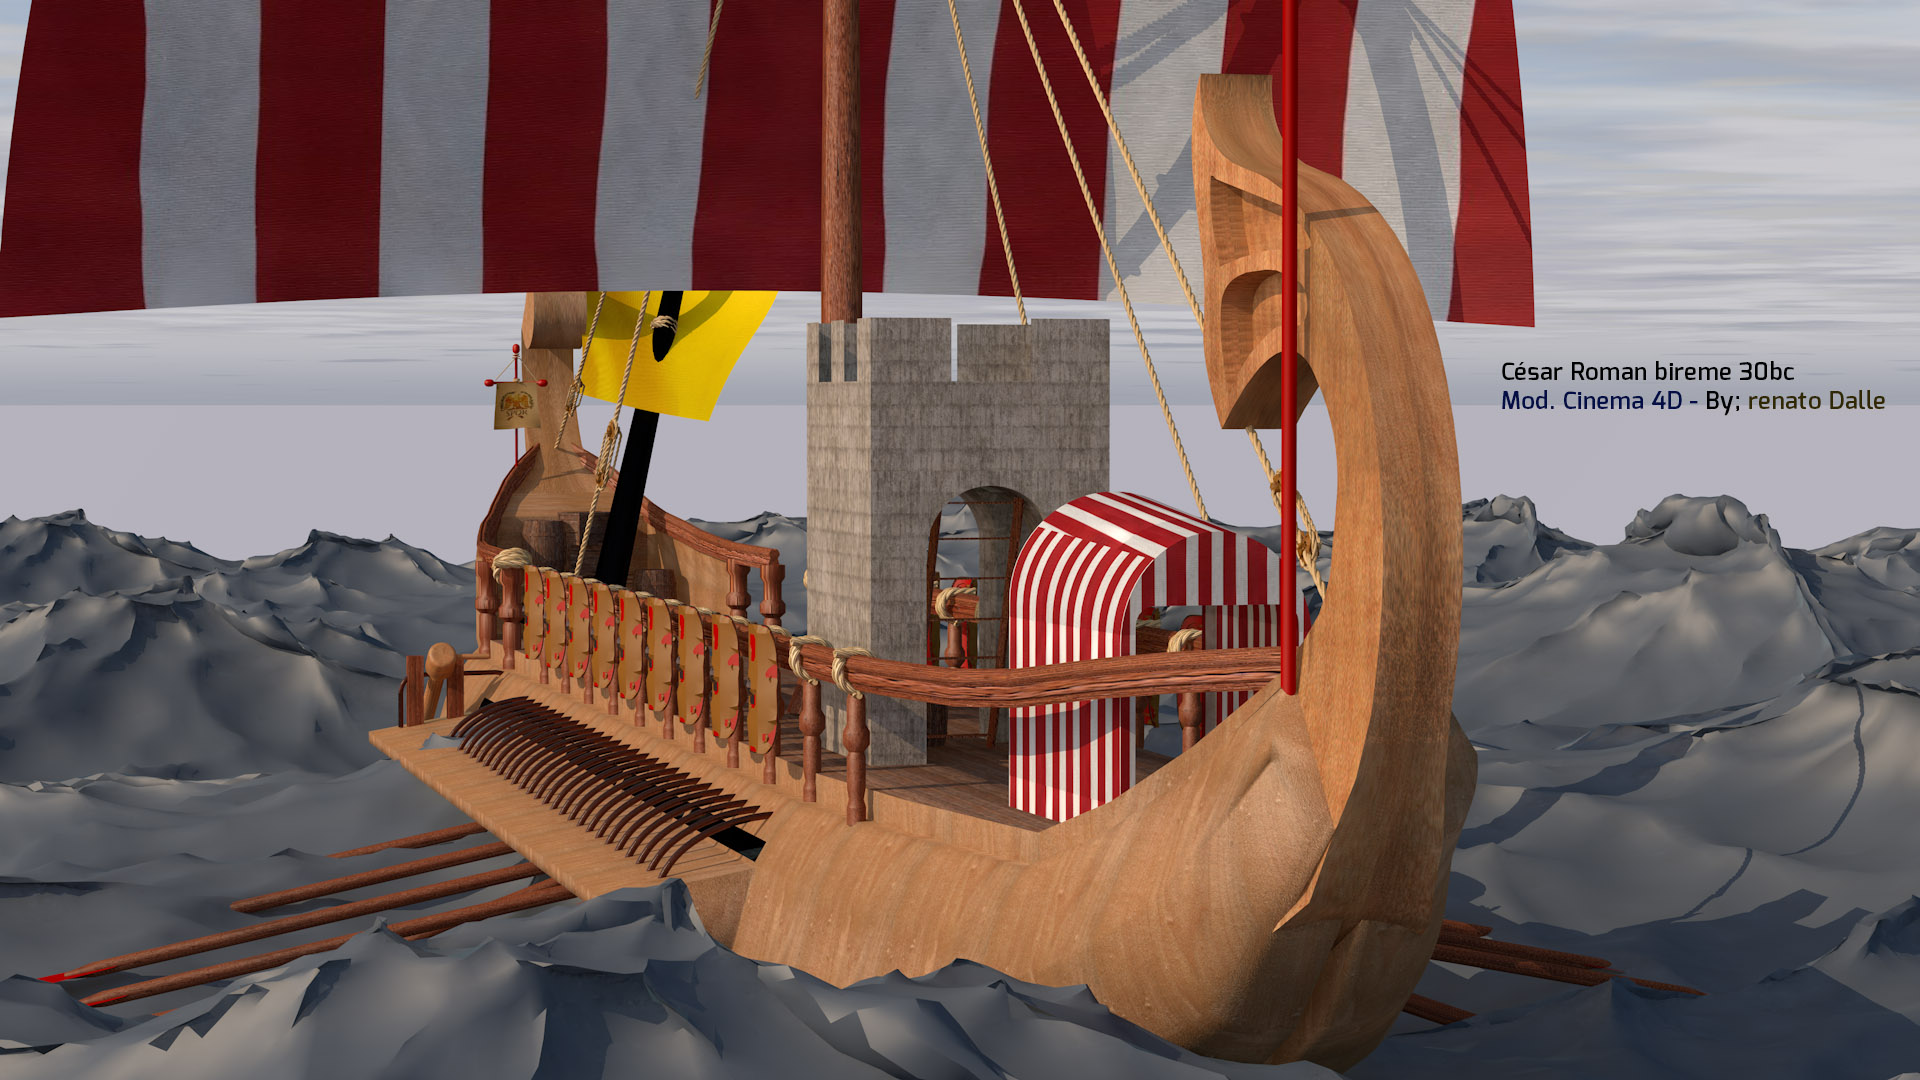 imagen de barco romano en Cinema 4d maxwell render